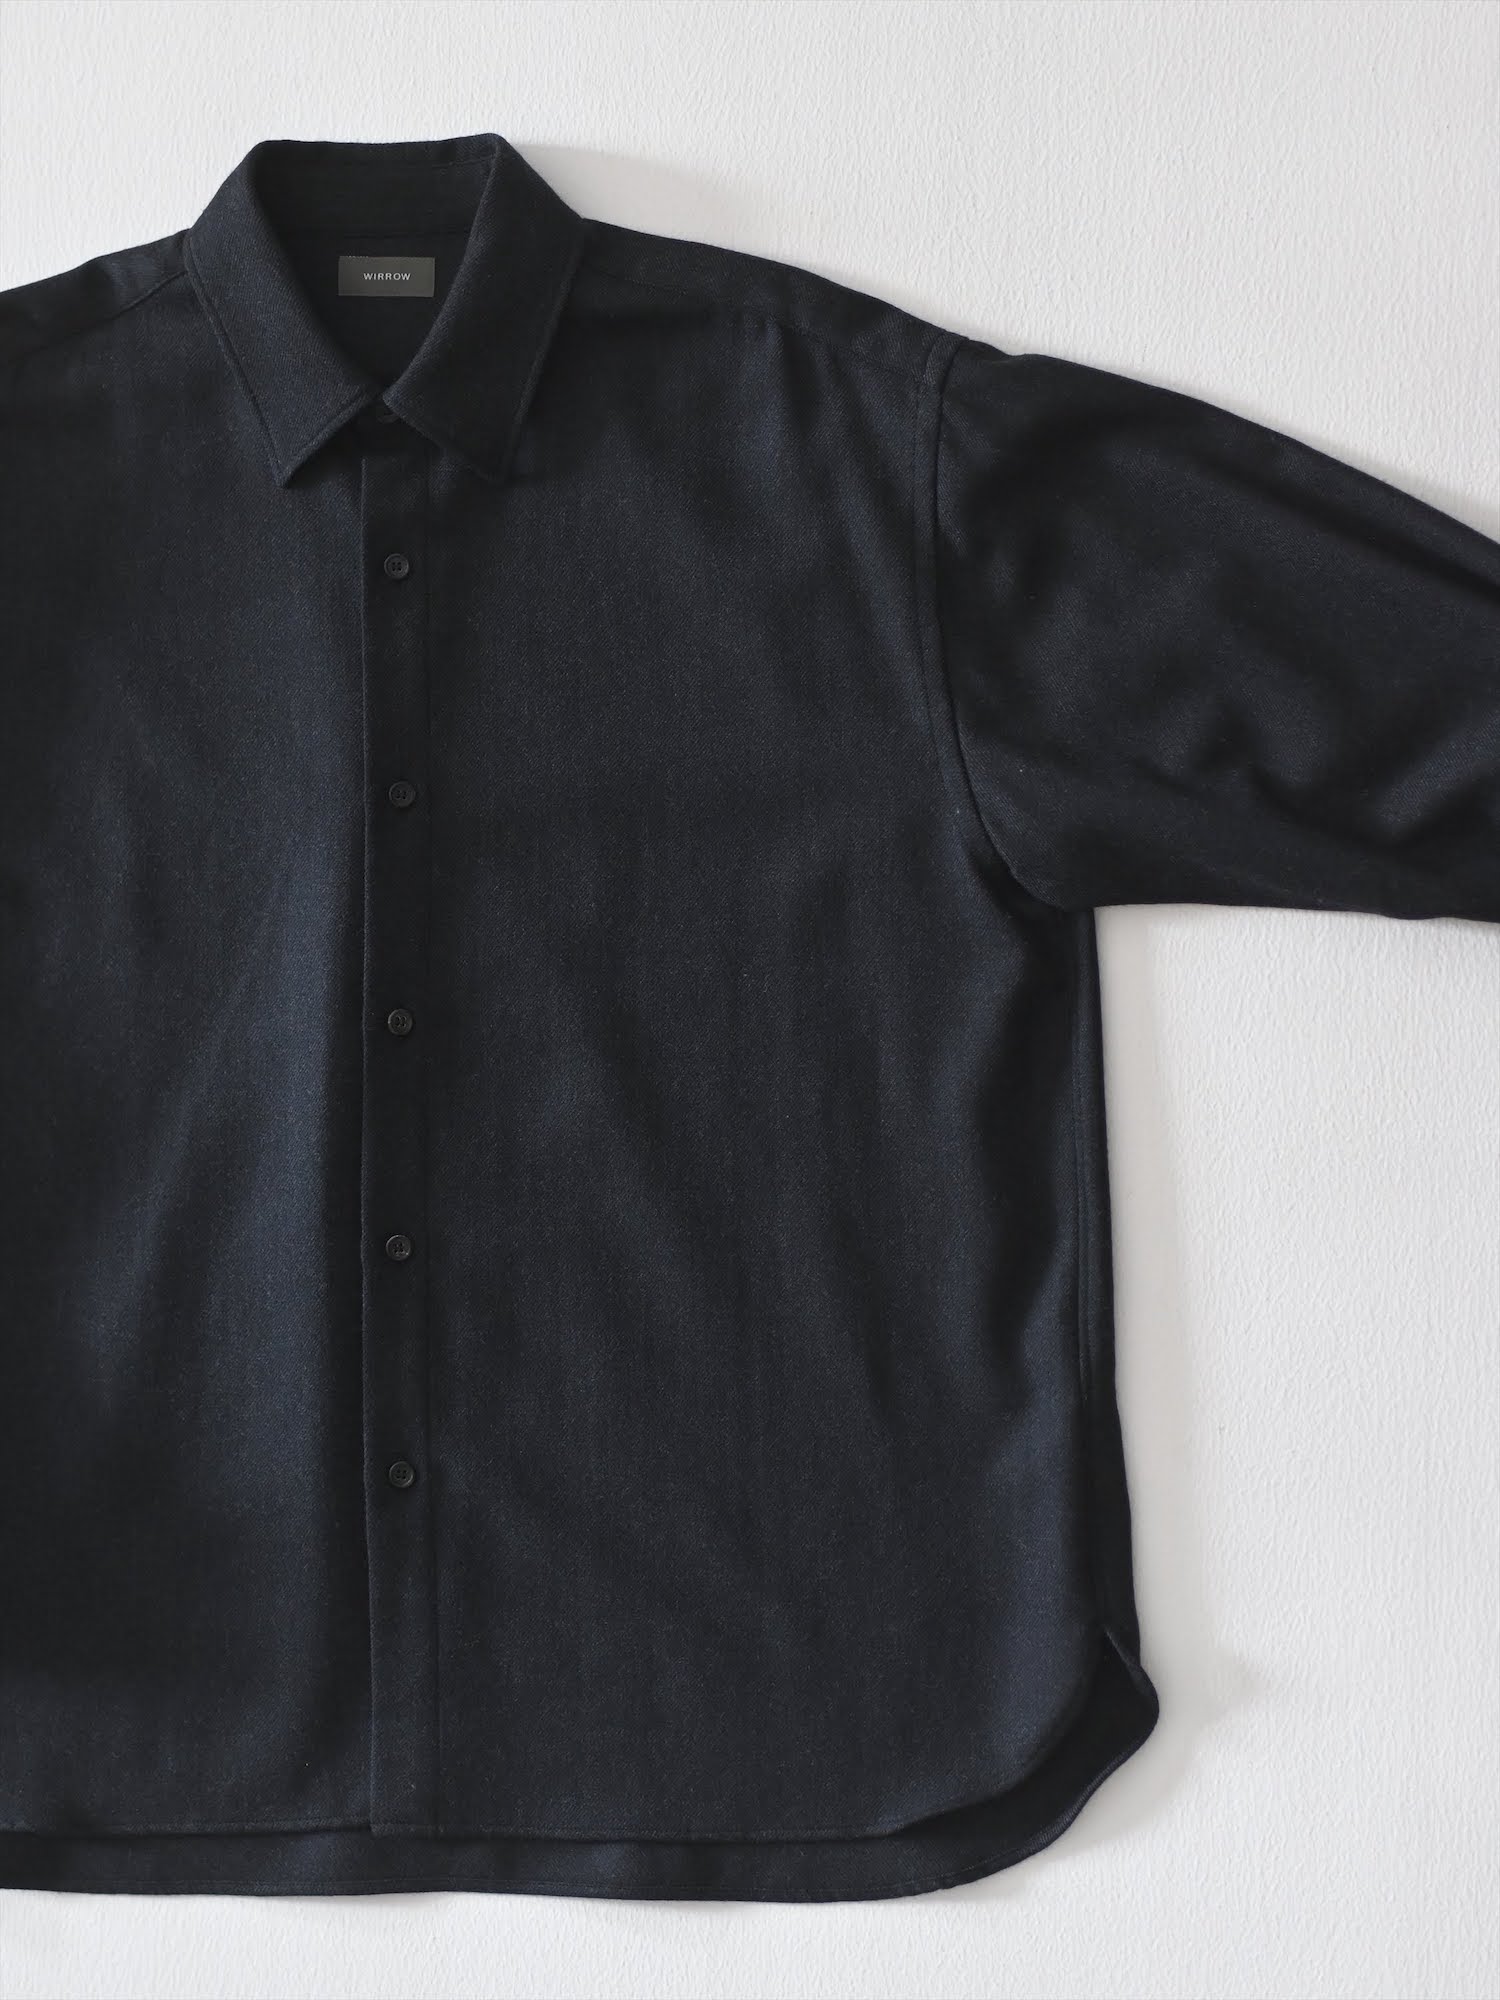 適切な価格 regular collar 無料配達 wirrow BOTANY WOOL shirt REGULAR COLLAR  wool SHIRT